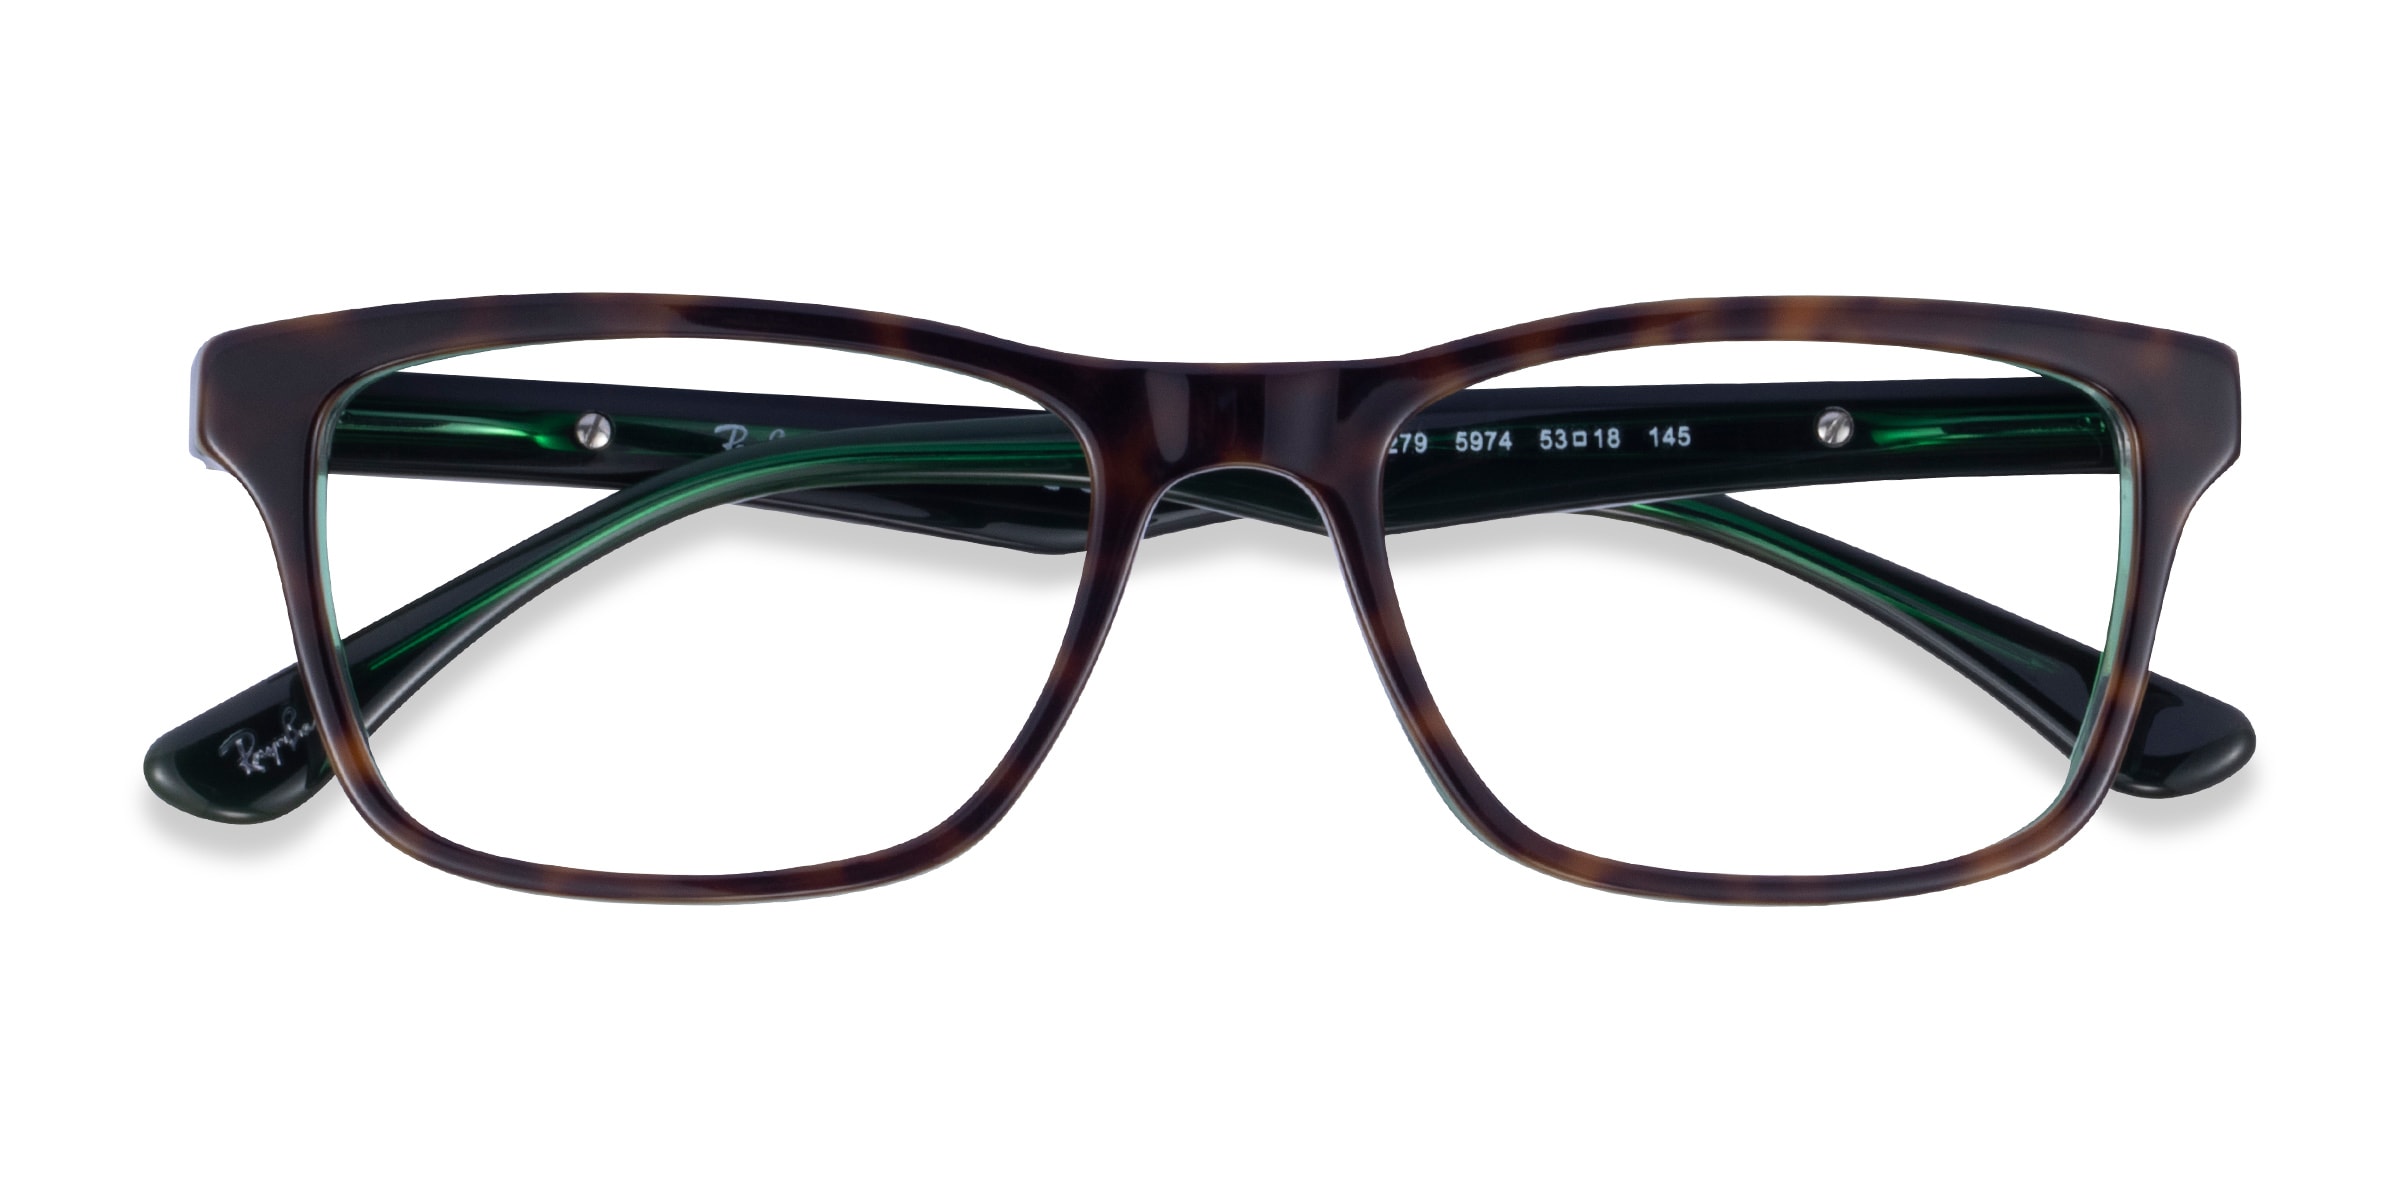 Ray-Ban RB5279 - Rectangle Tortoise Green Frame Eyeglasses 